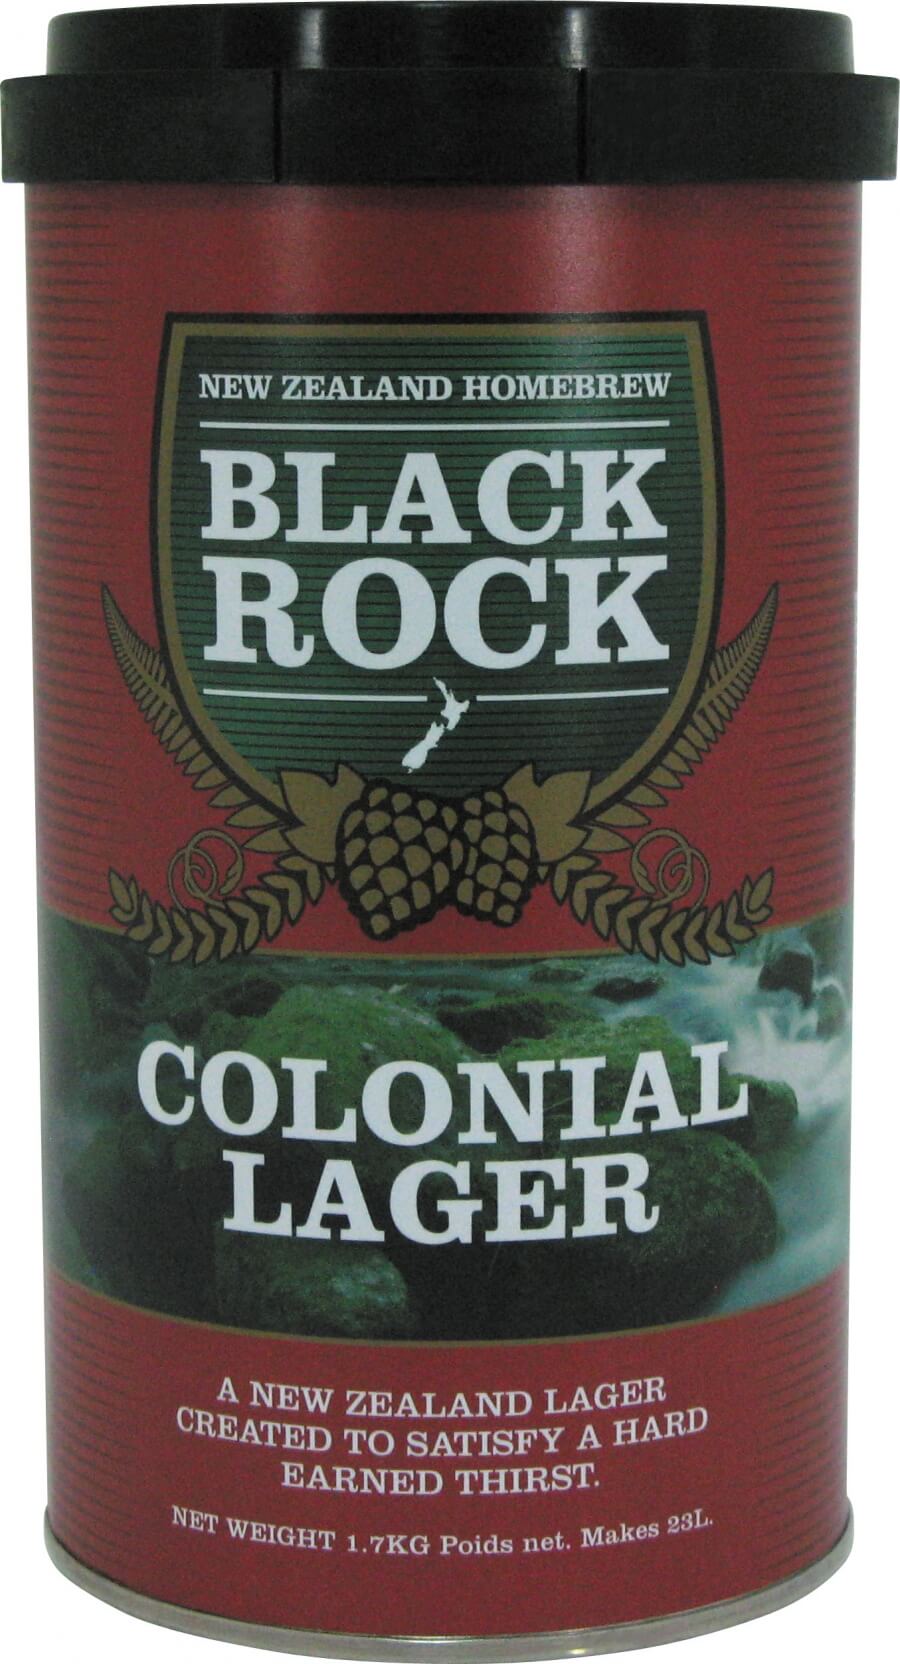 Black Rock Colonial Lager Beerkit 1.7kg UBREW4U